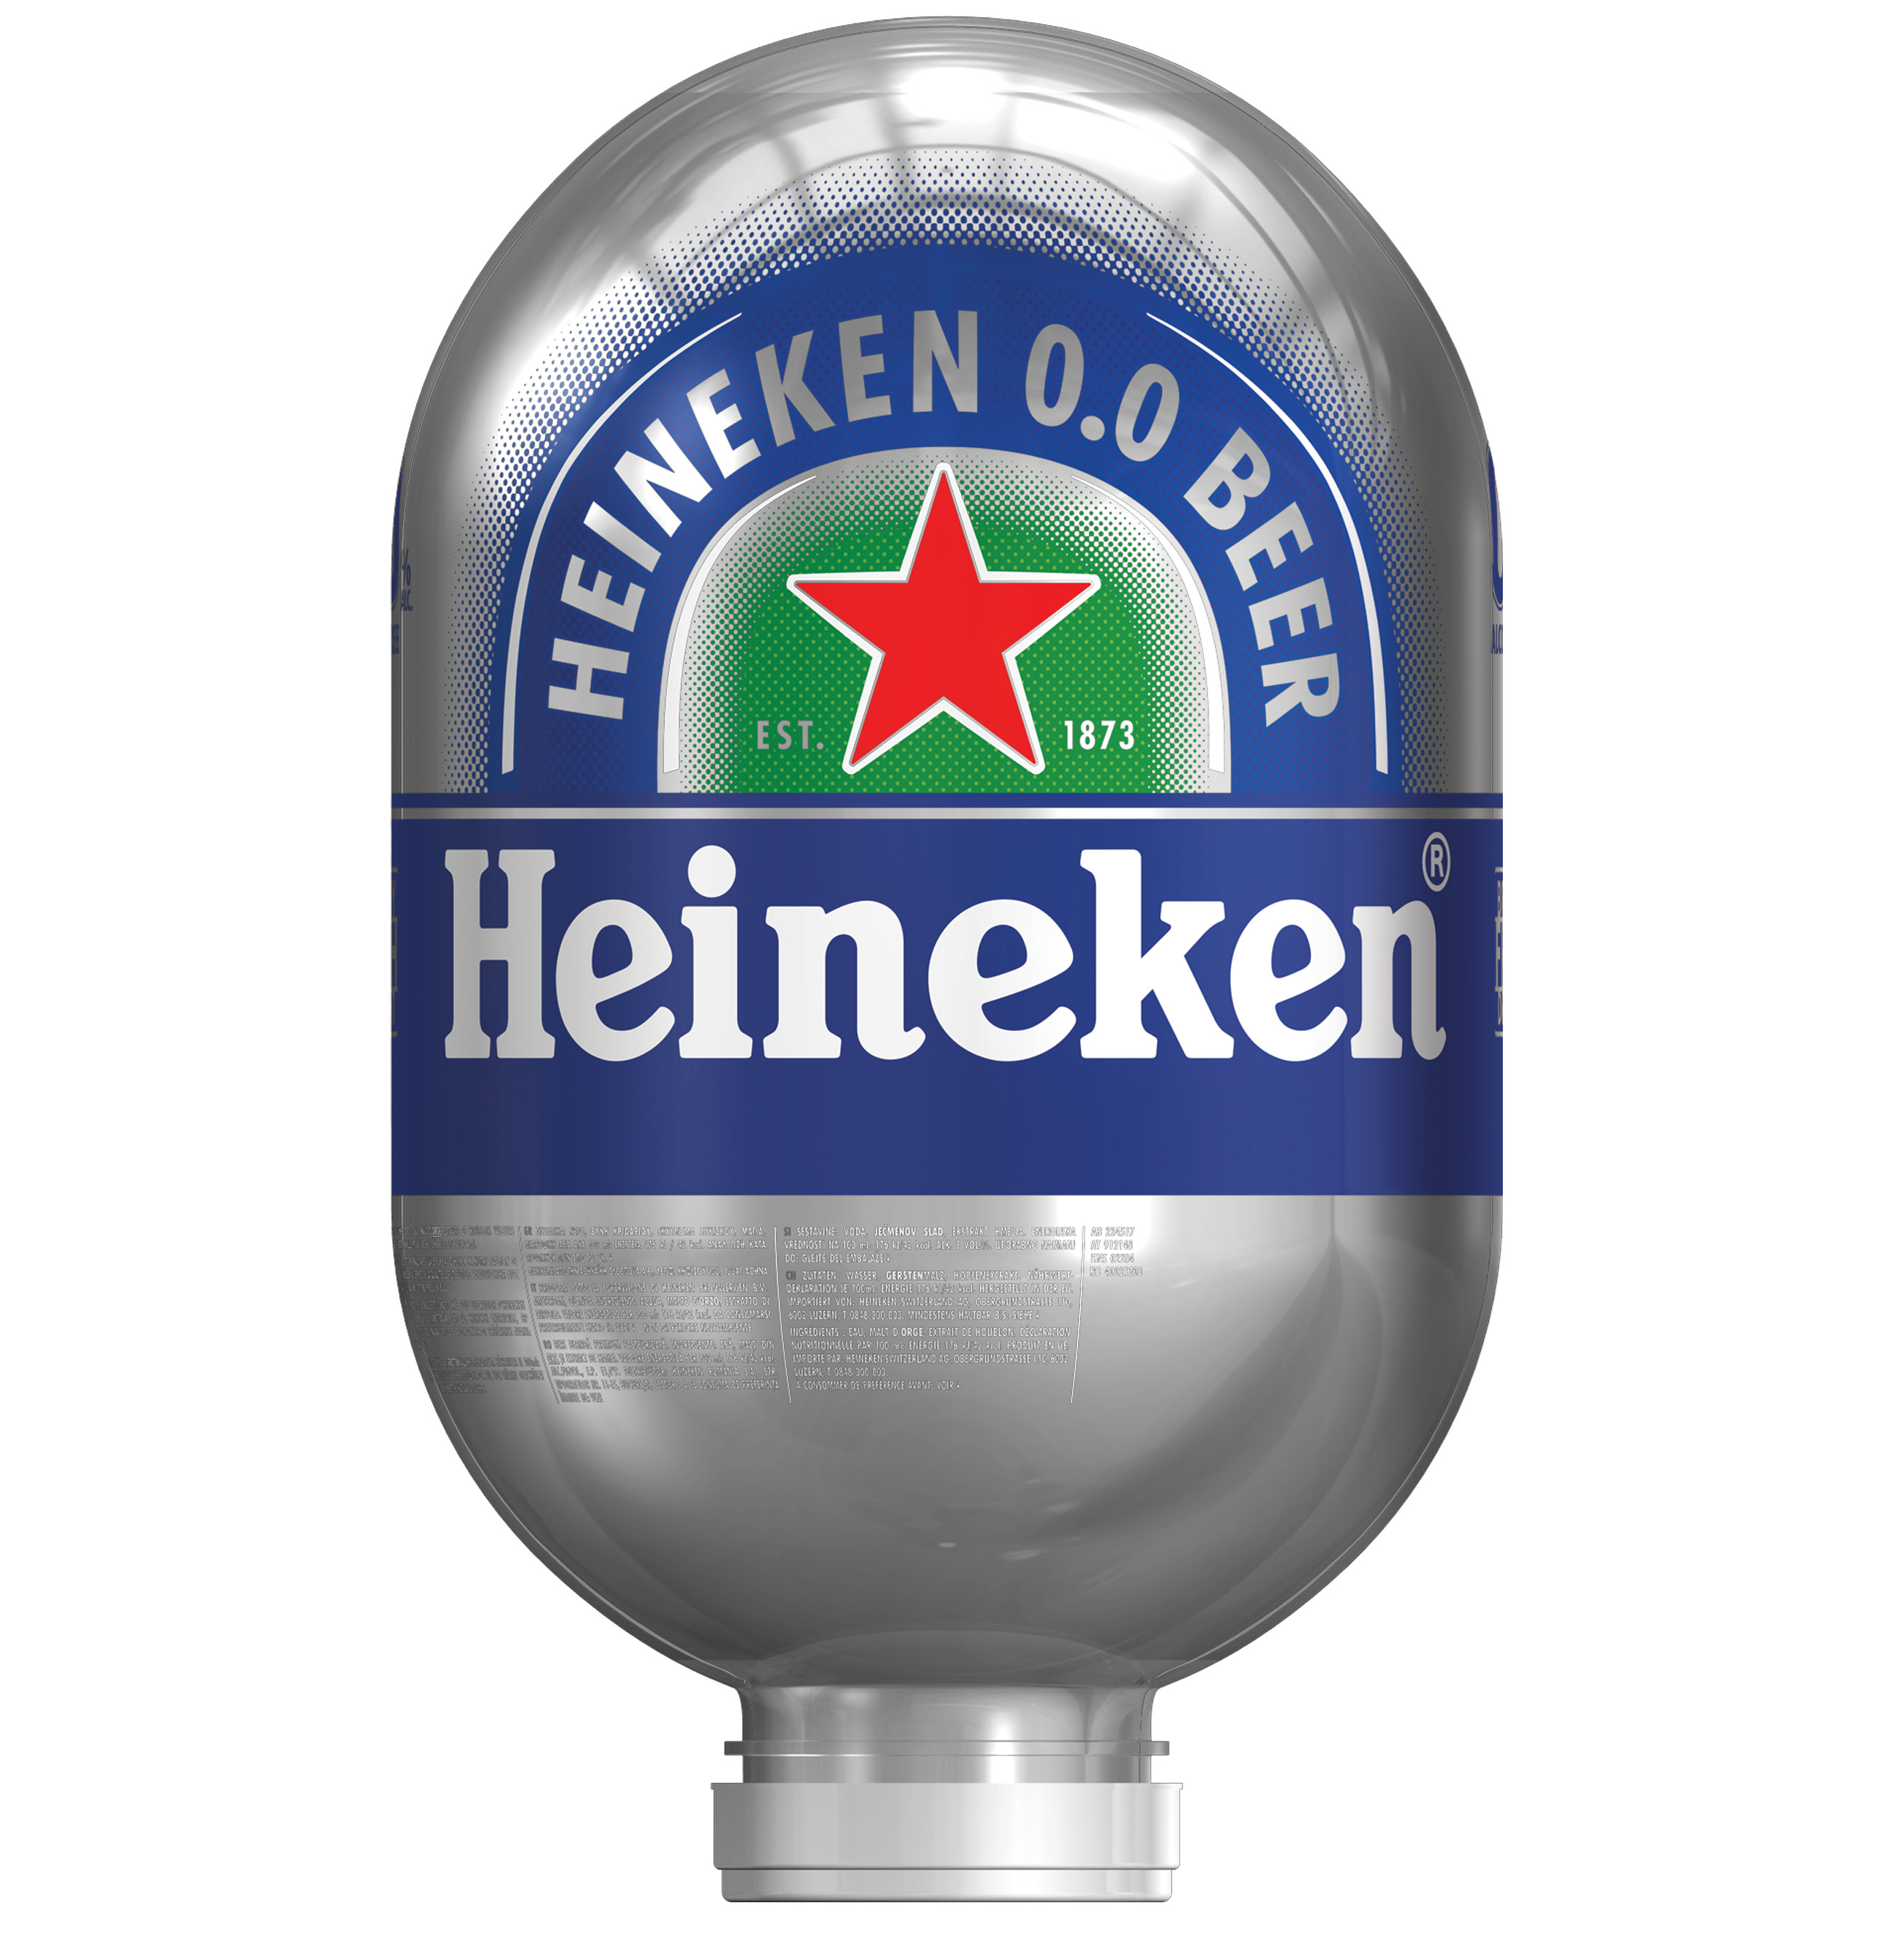 71135 Heineken 0.0% blade fust 8 liter